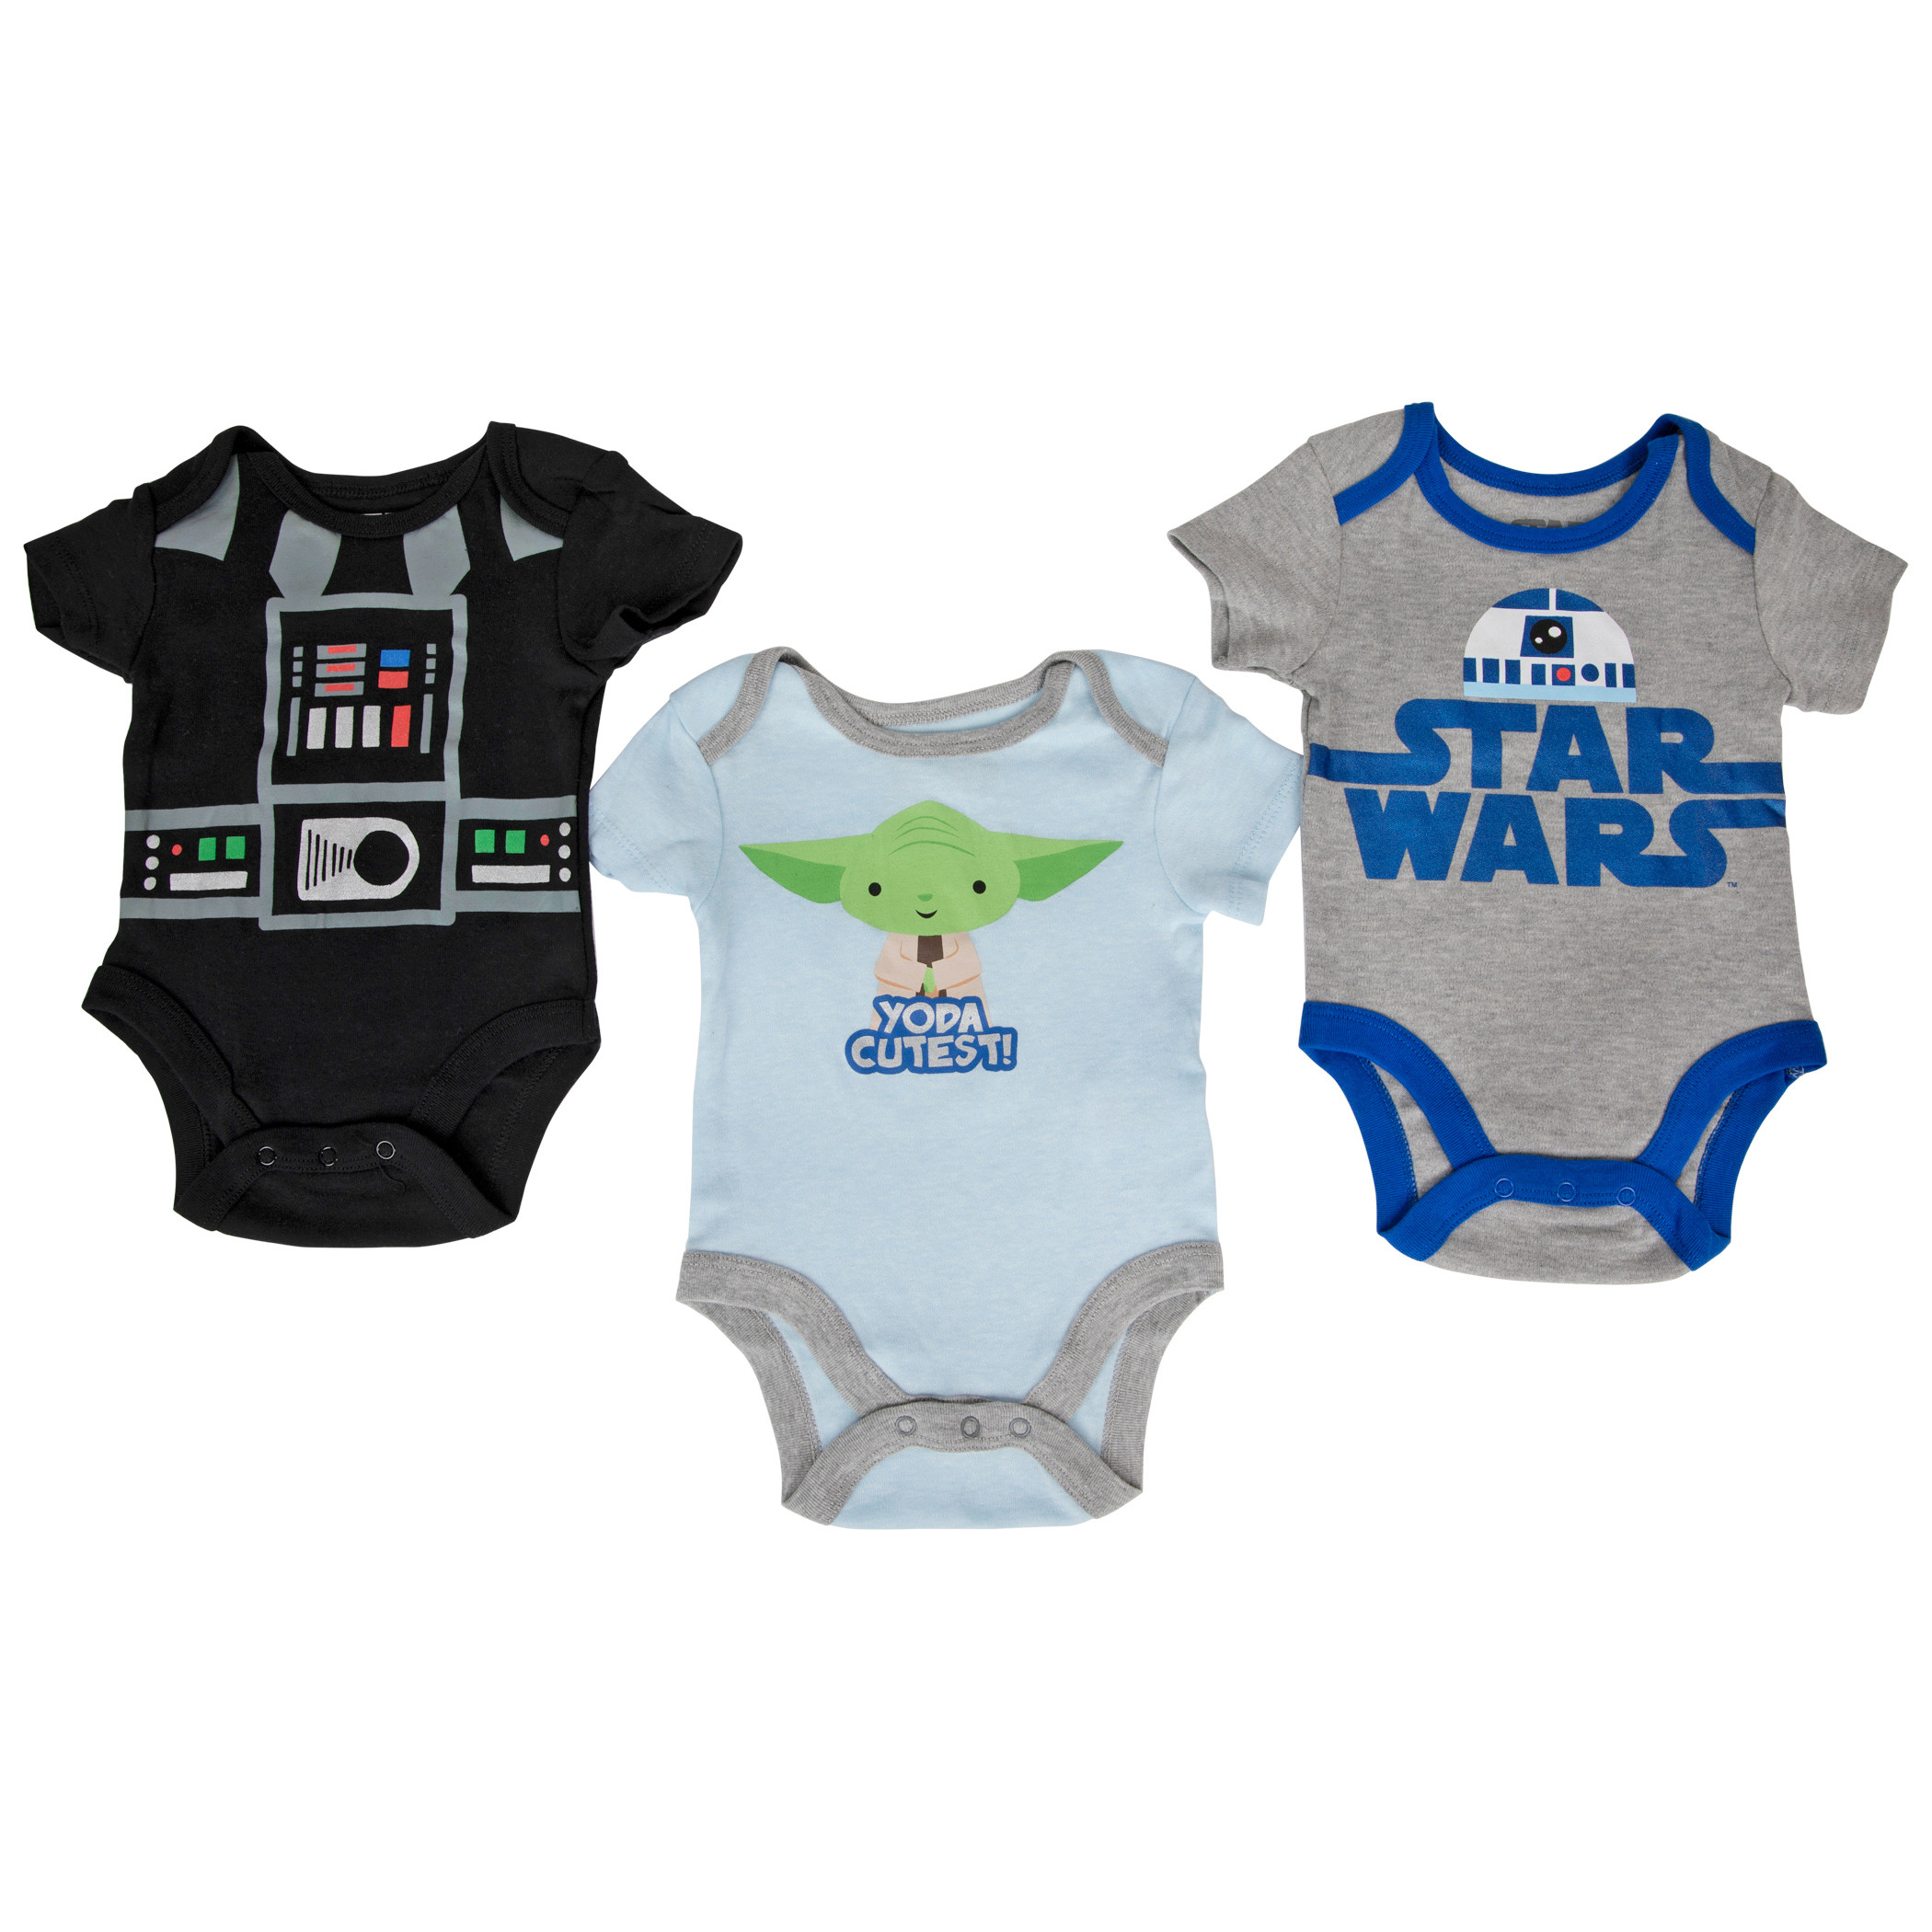 Star Wars Darth Vader Yoda and R2-D2 3-Pack Infant Bodysuit Set